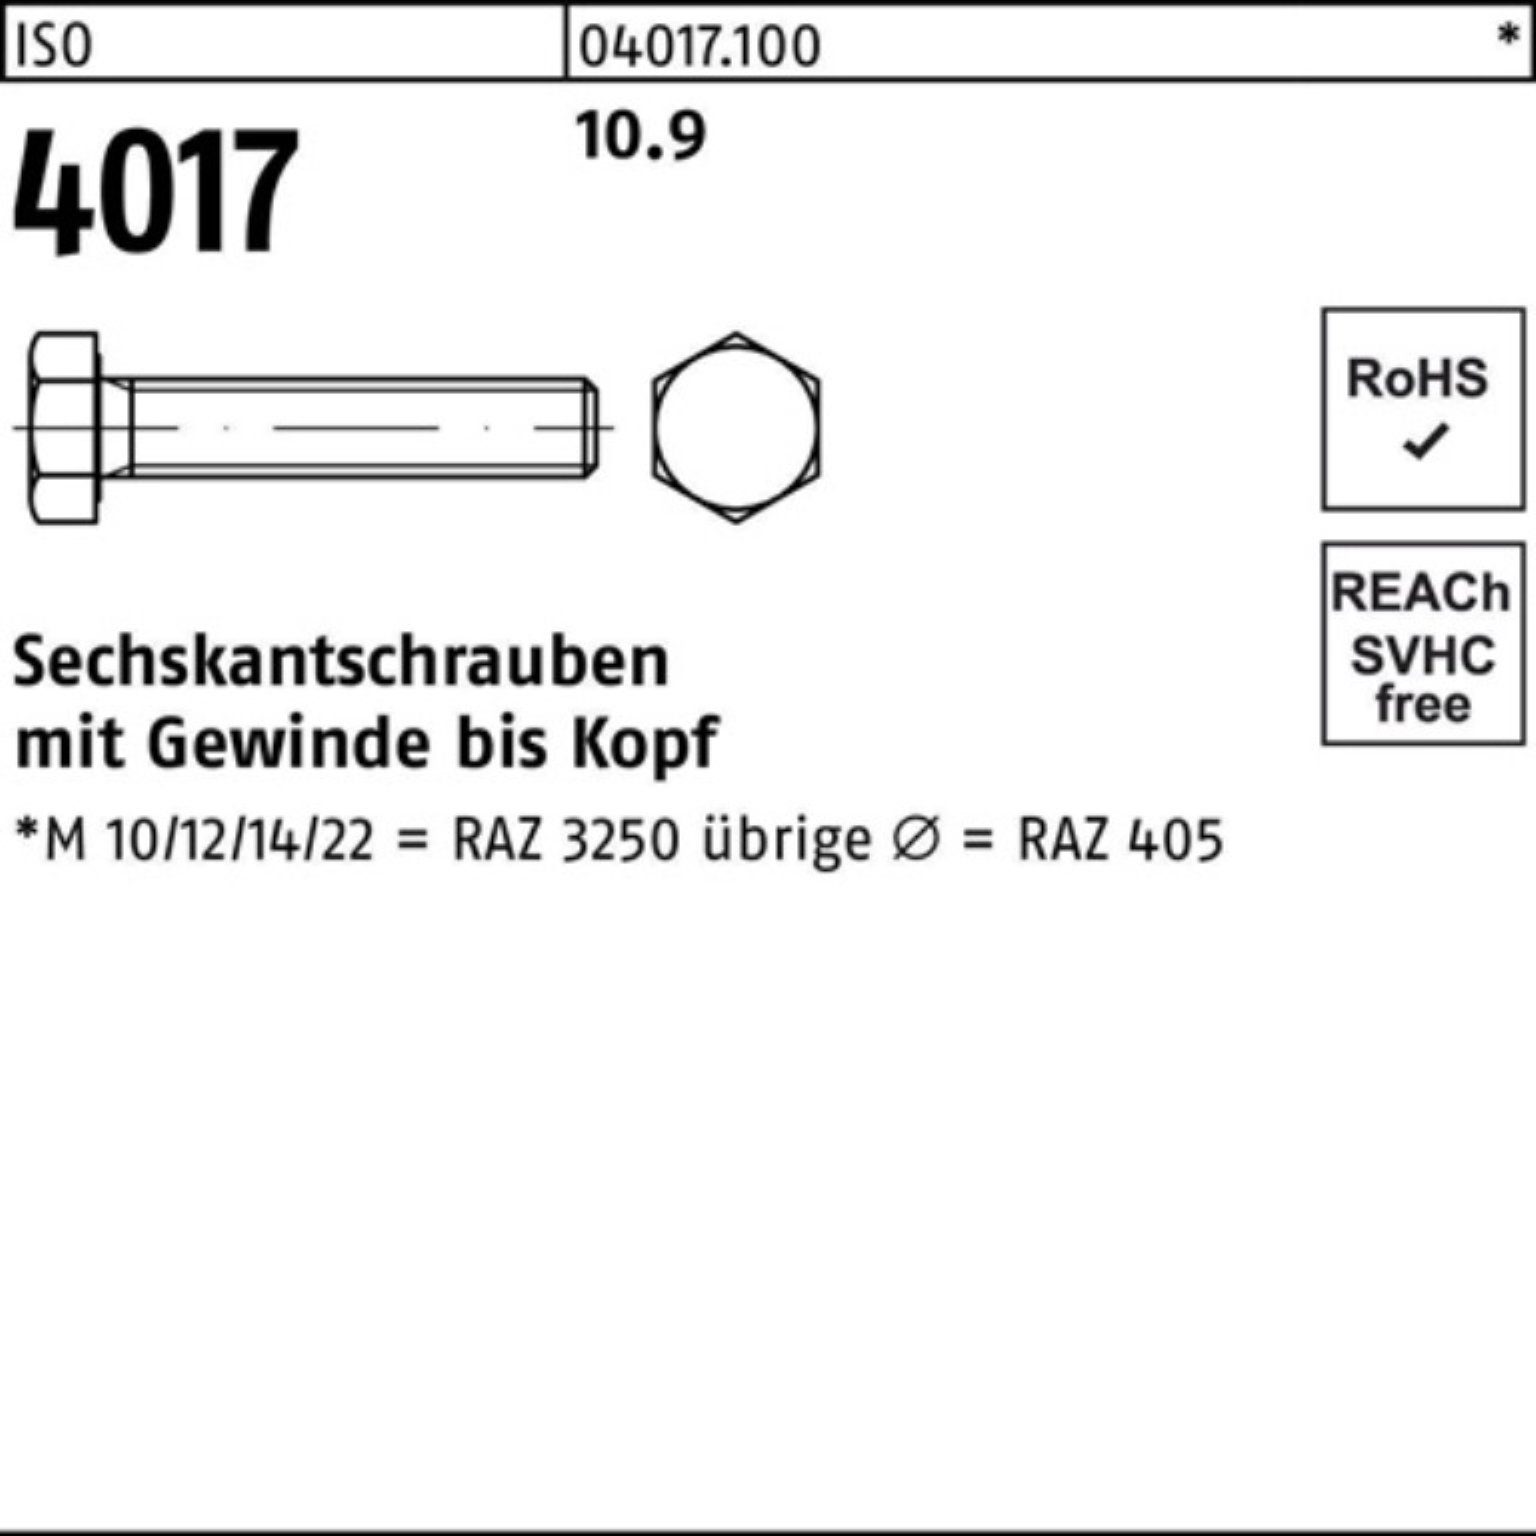 4 4017 Bufab Sechskantschraube 10.9 VG Pack Sechskantschraube ISO 100er 100 25 M14x Stück ISO